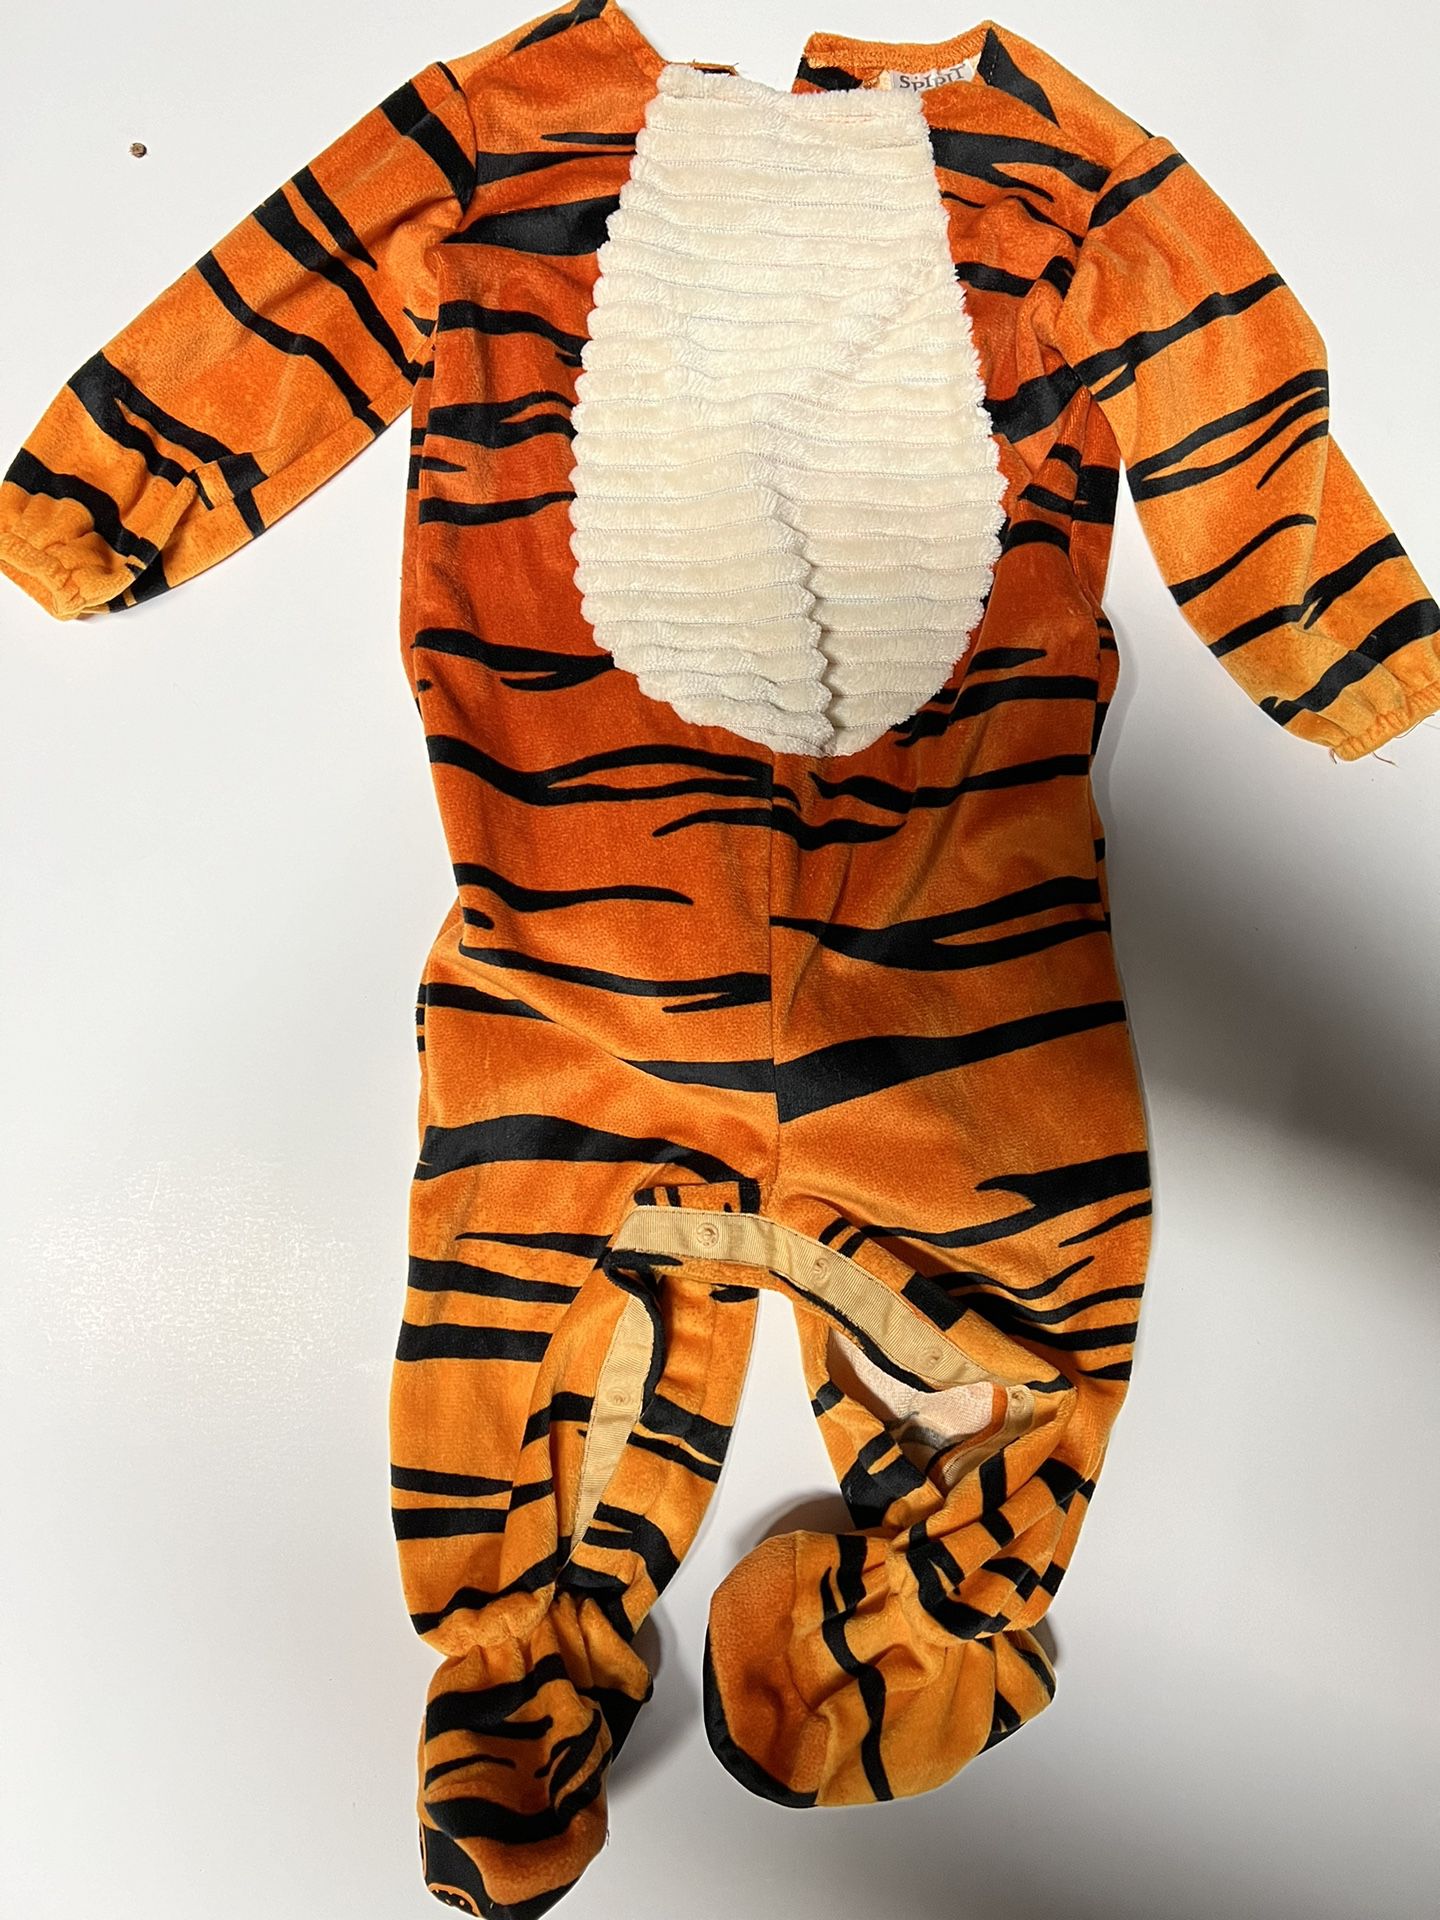 SPIRIT Halloween Costume Little Tiger Tot Jumpsuit Infant 0-6M Orange/Black